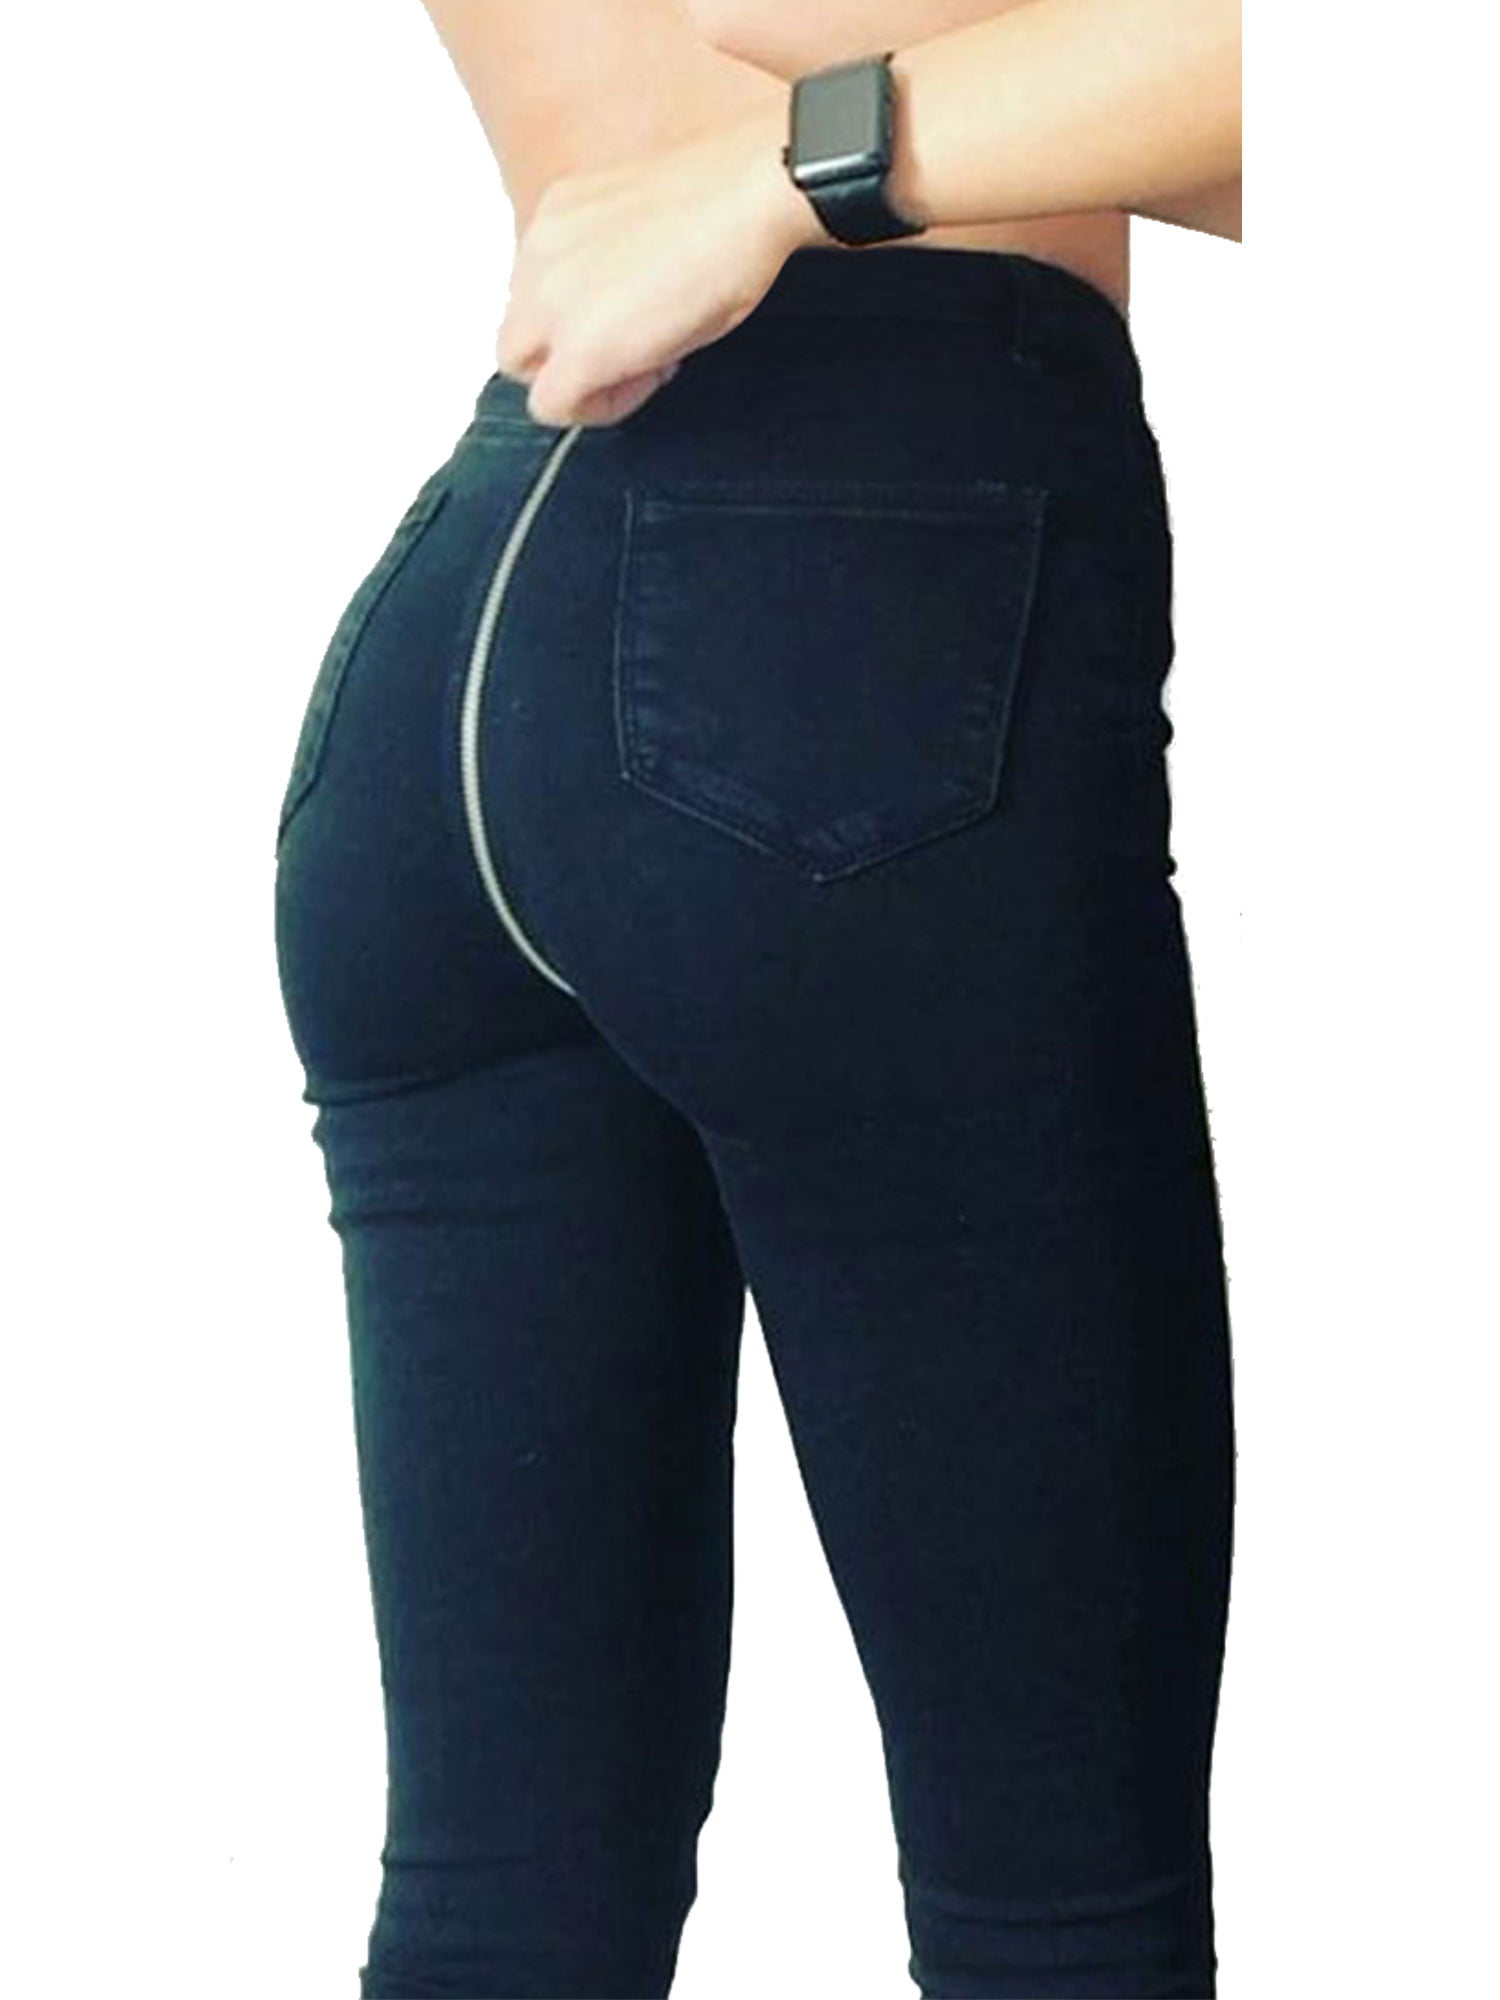 Sexy Dance - Sexy Women Back Zipper Denim Jeans High Waist Hip Push Up ...